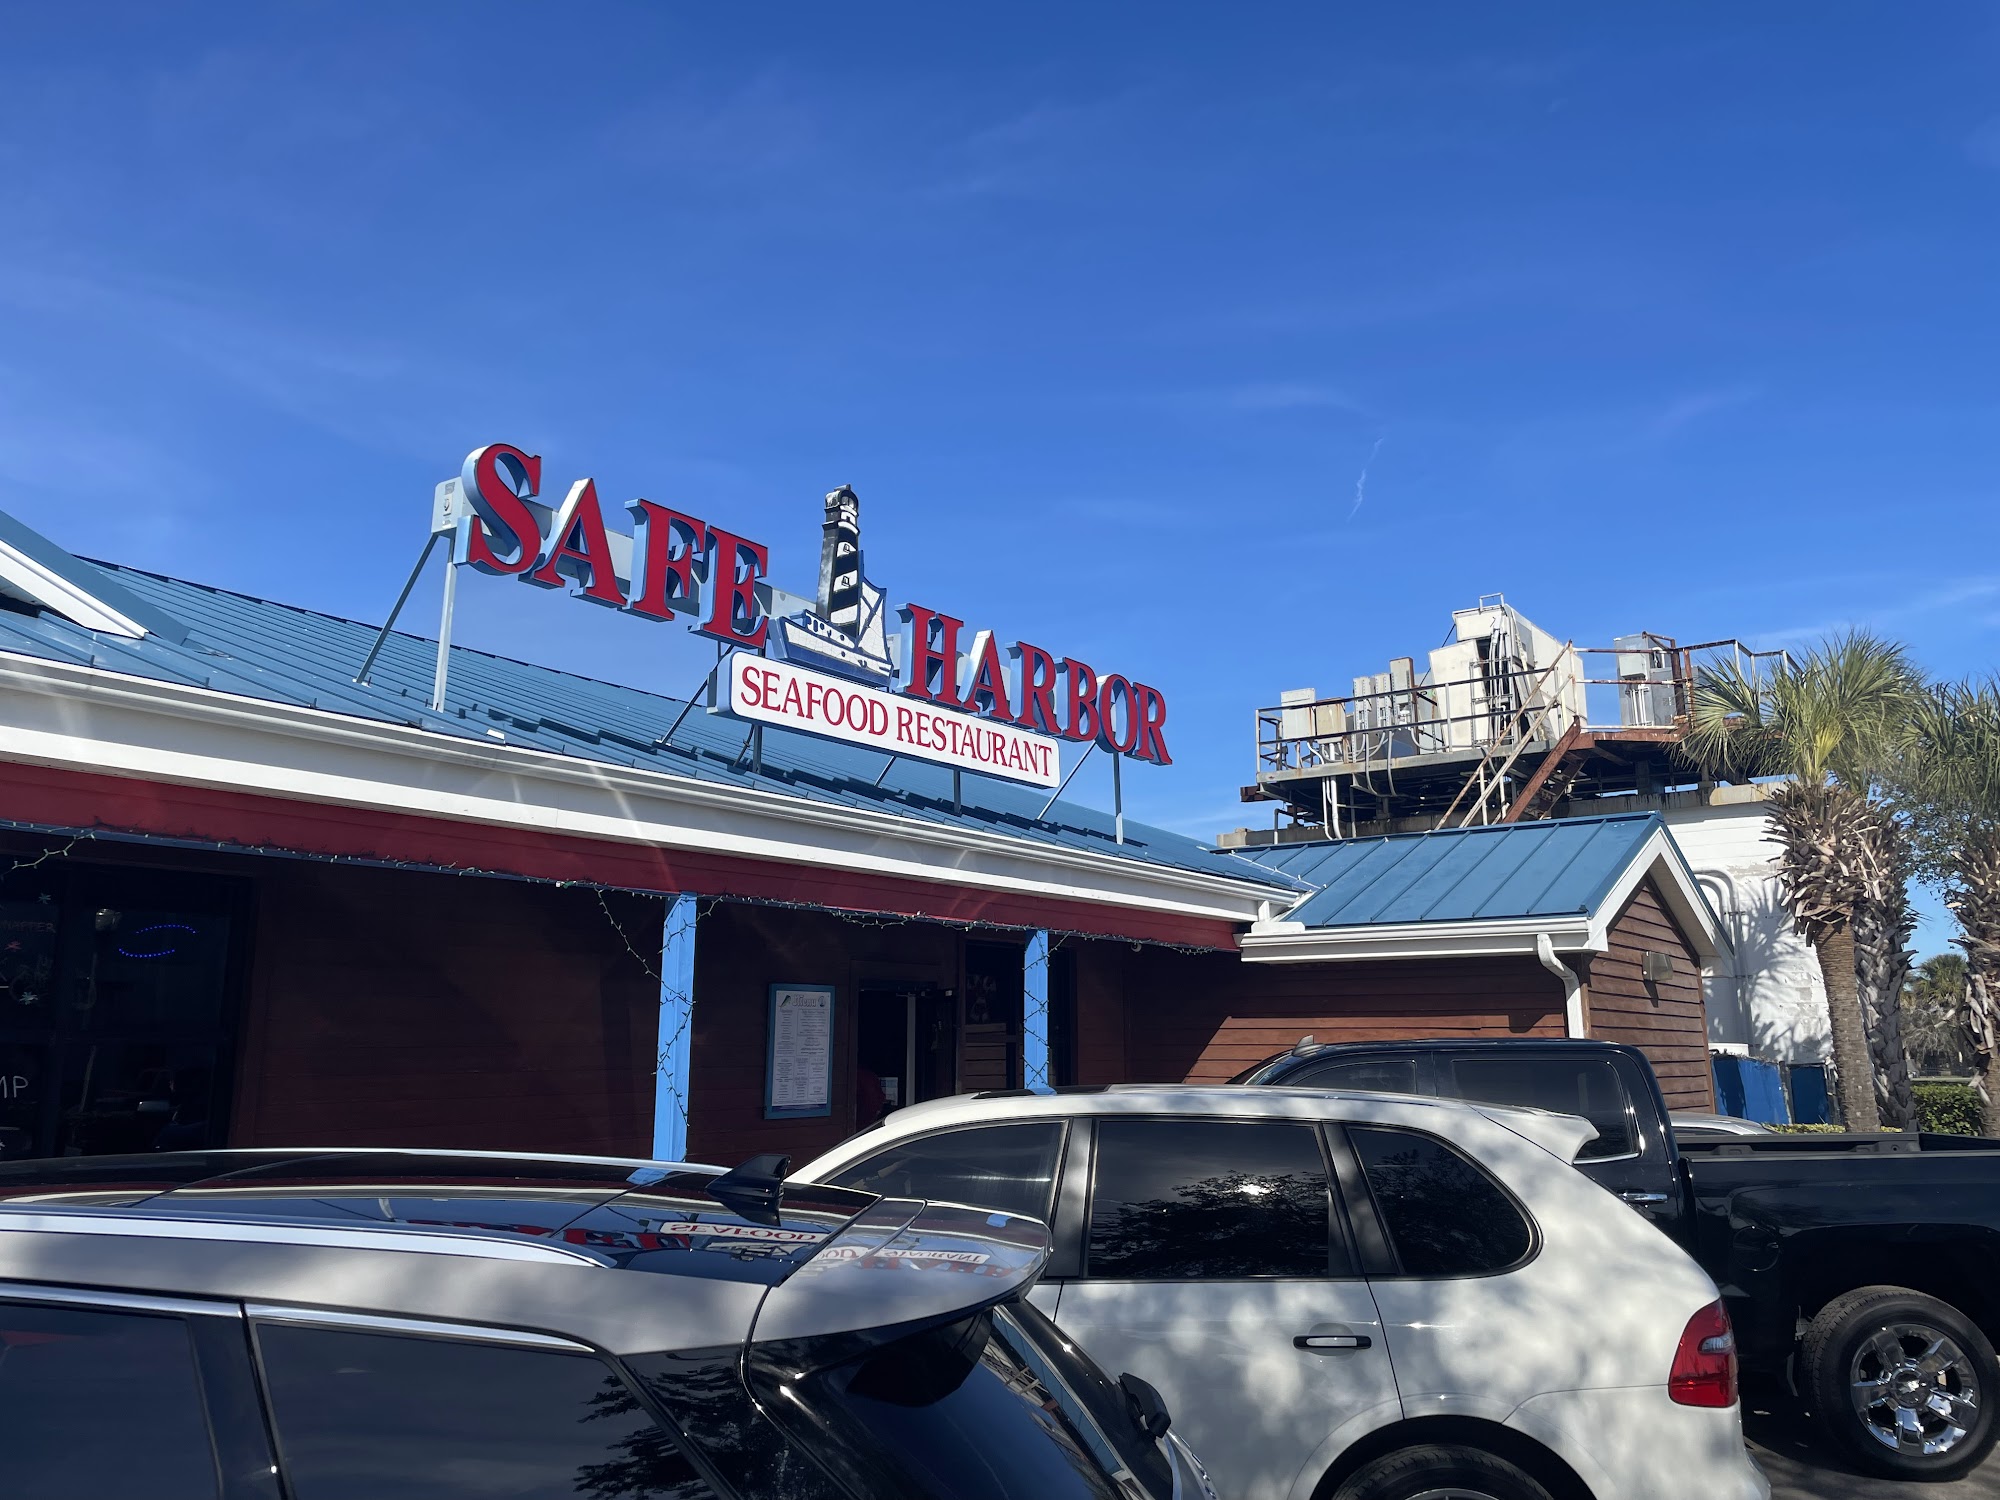 Safe Harbor Seafood Restaurant